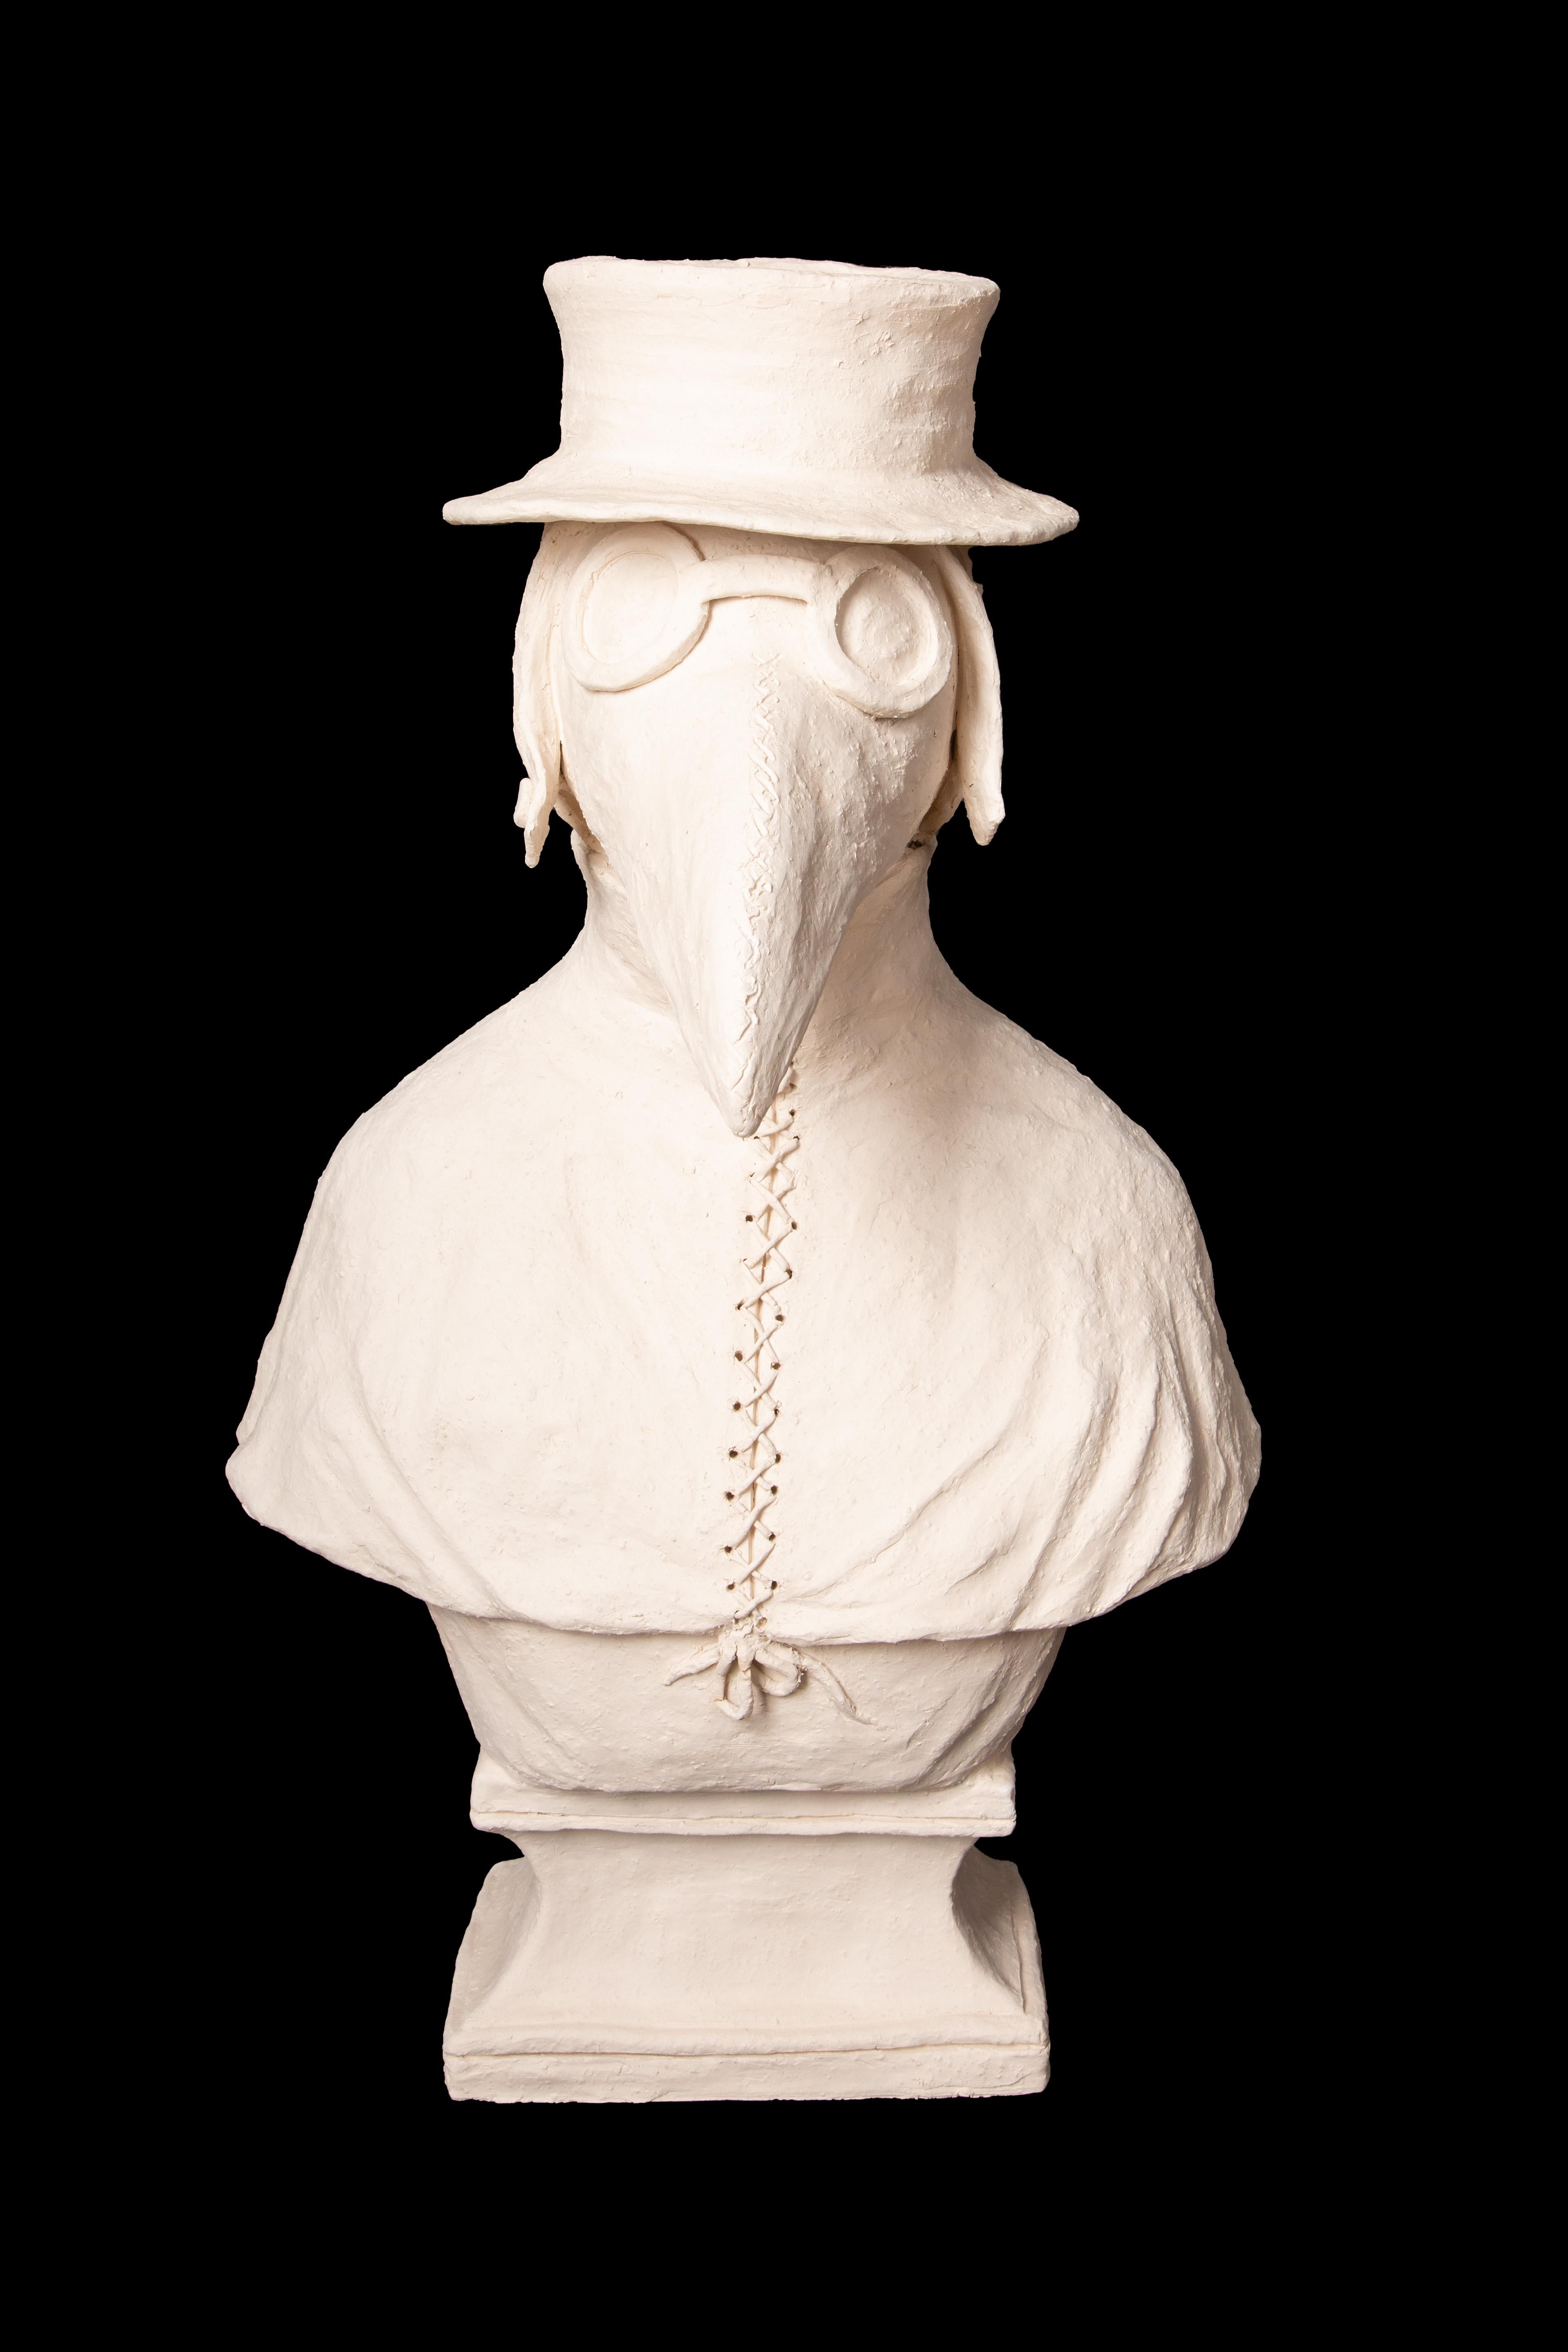 Chien anthropomorphe en terre cuite portant un masque de docteur de la peste par Laurence Lenglare

Mesure 17